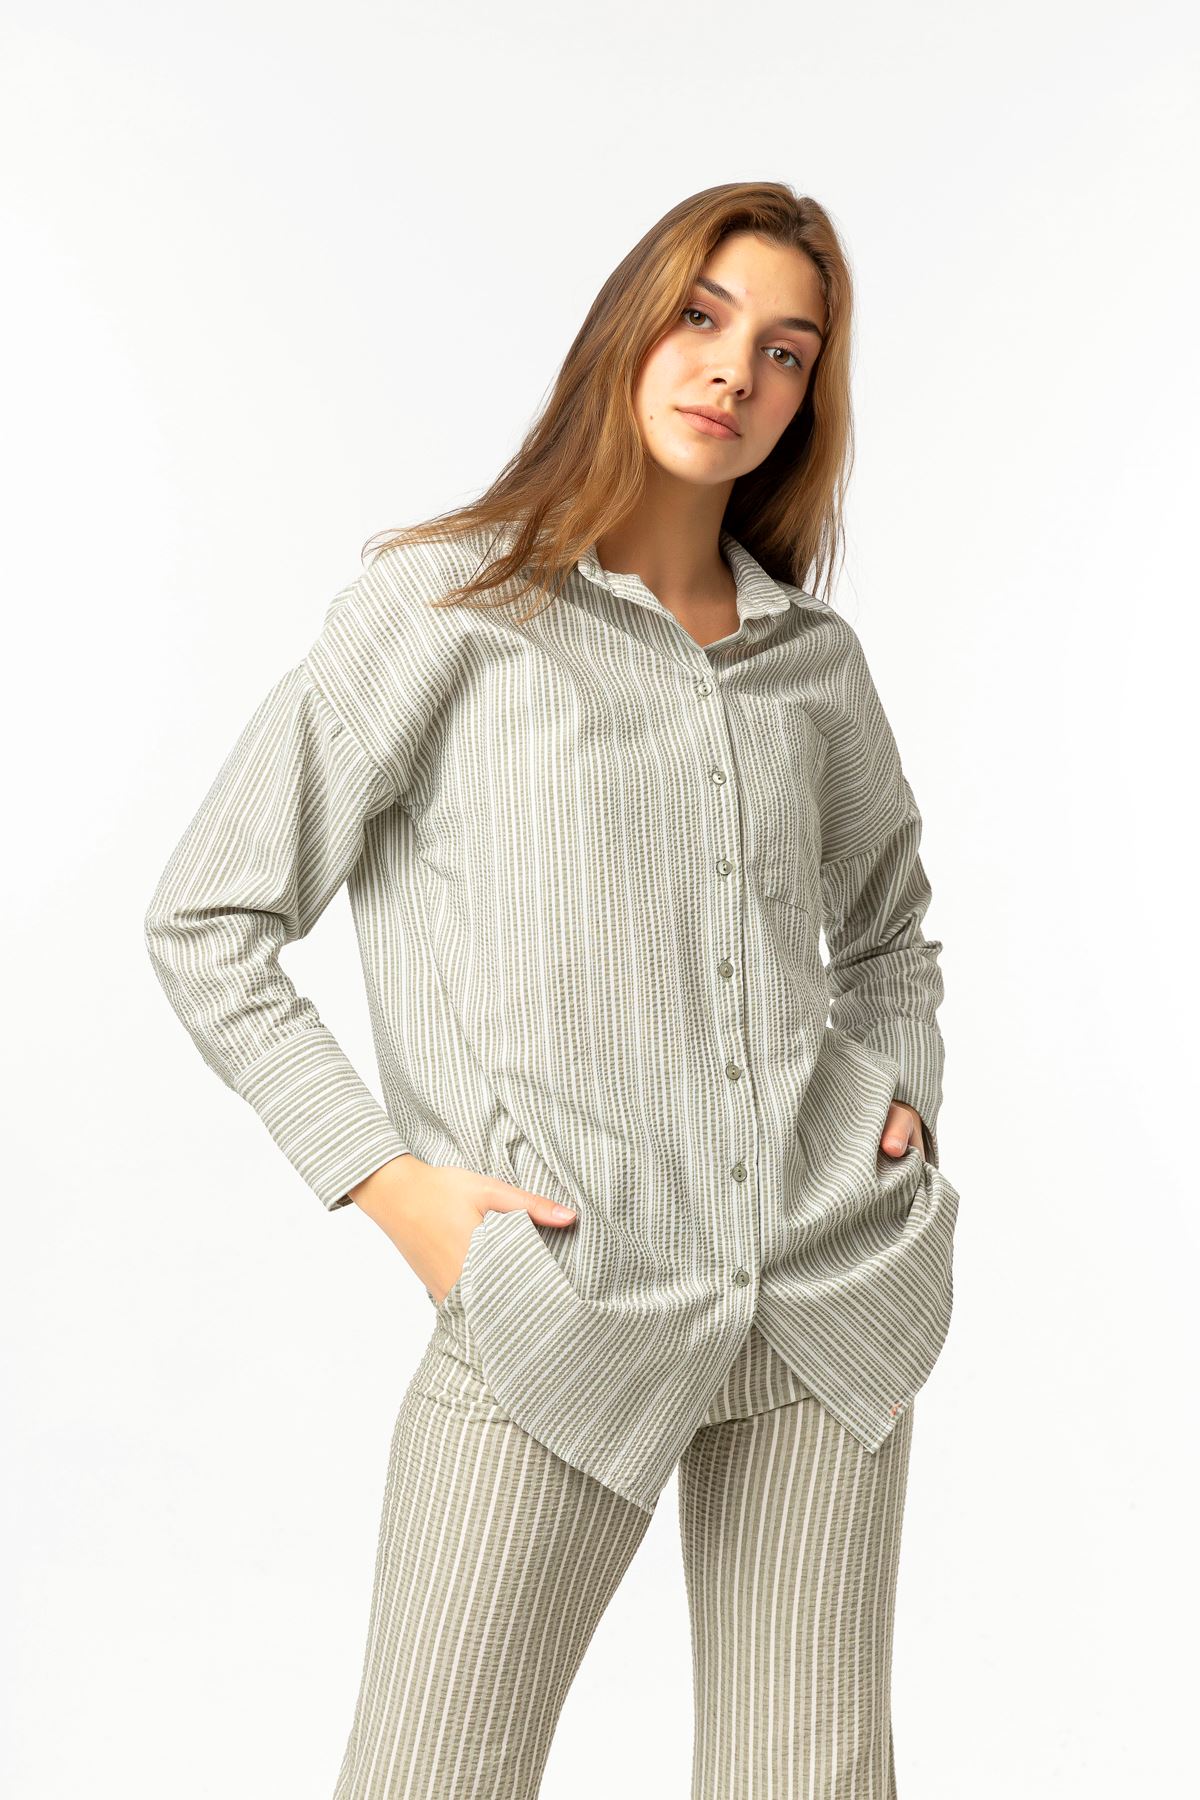 Gofre Fabric Long Sleeve Long Wide Striped Women'S Shirt - Khaki 